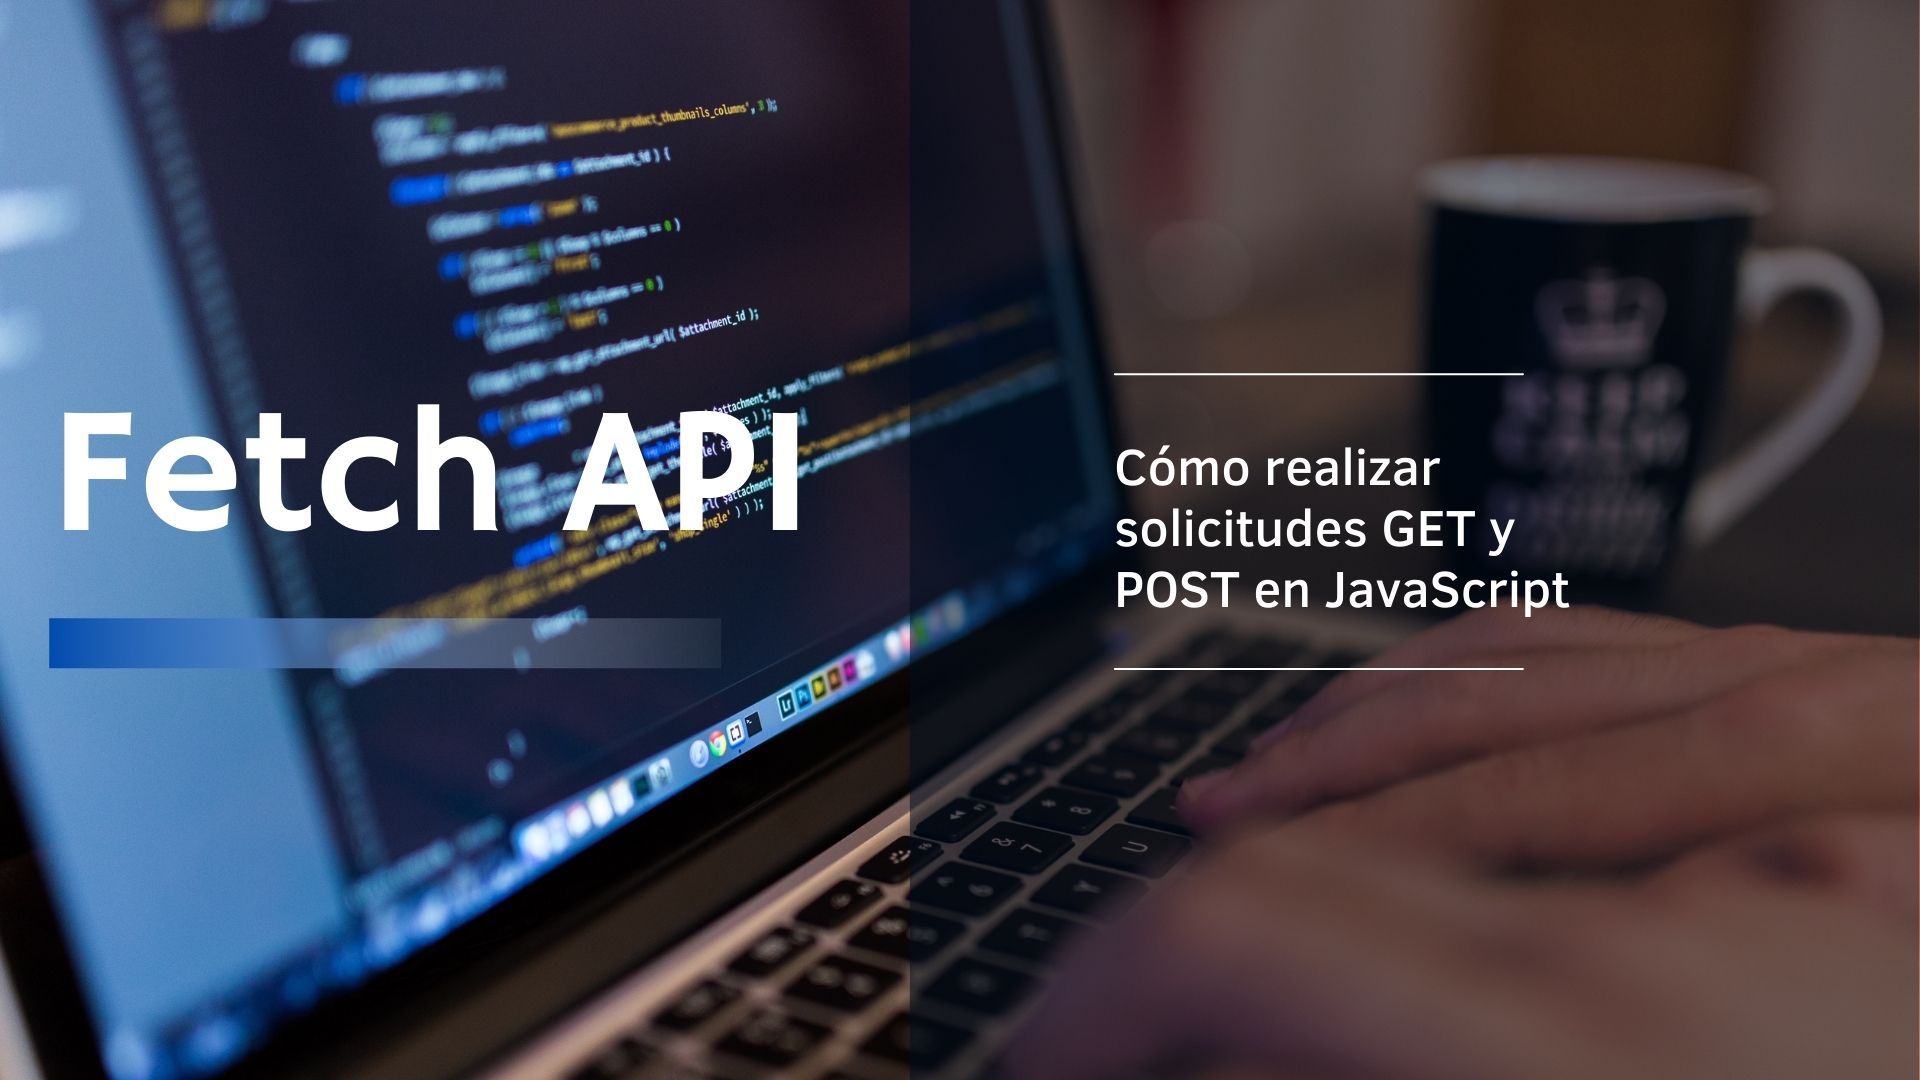 Fetch API: Cómo realizar una solicitud GET y una solicitud POST en JavaScript